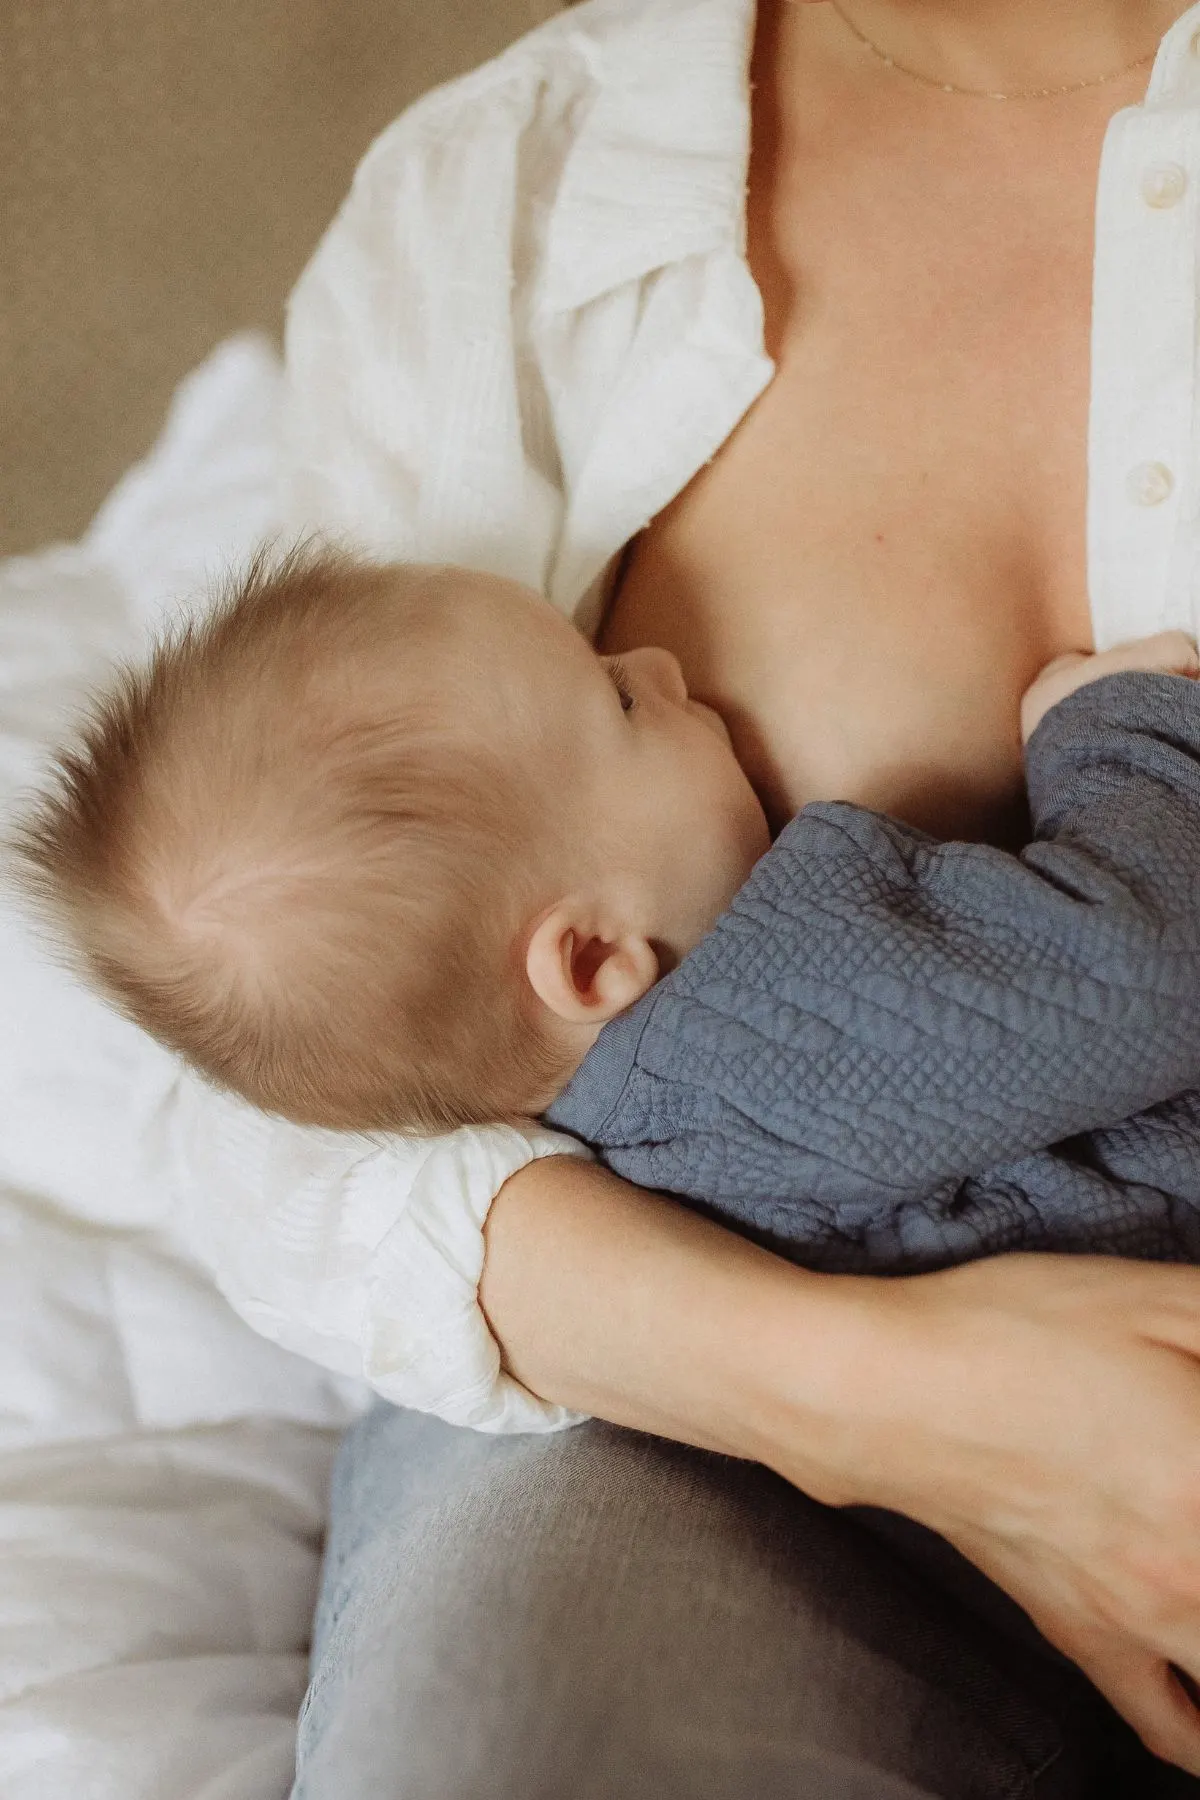 Torso shot of a woman breastfeeding a baby boy in blue shirt.